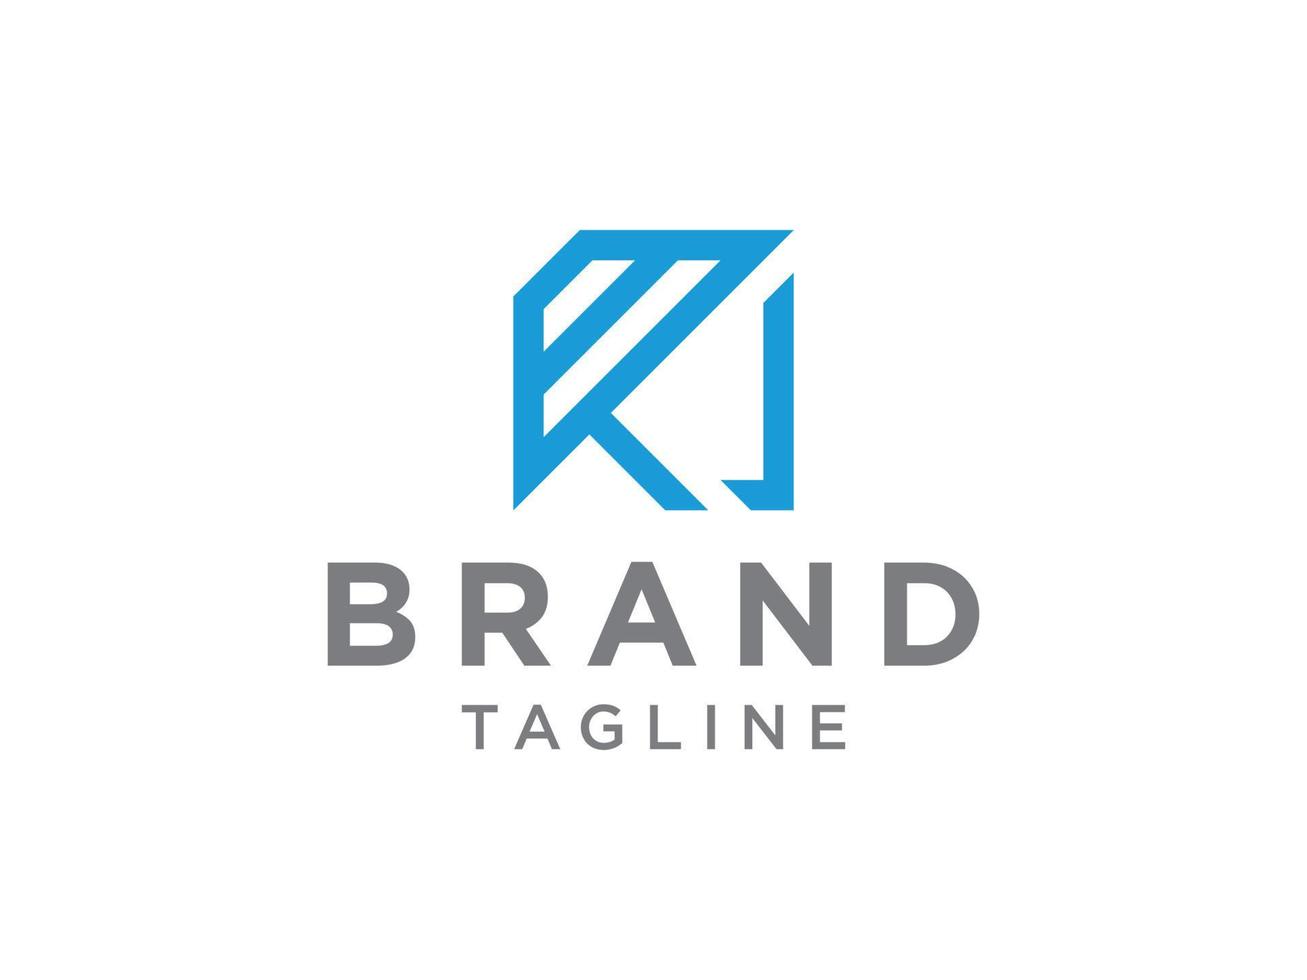 eerste letter r-logo. blauwe overlay origami stijl geïsoleerd op een witte achtergrond. bruikbaar voor bedrijfs- en merklogo's. platte vector logo ontwerpsjabloon element